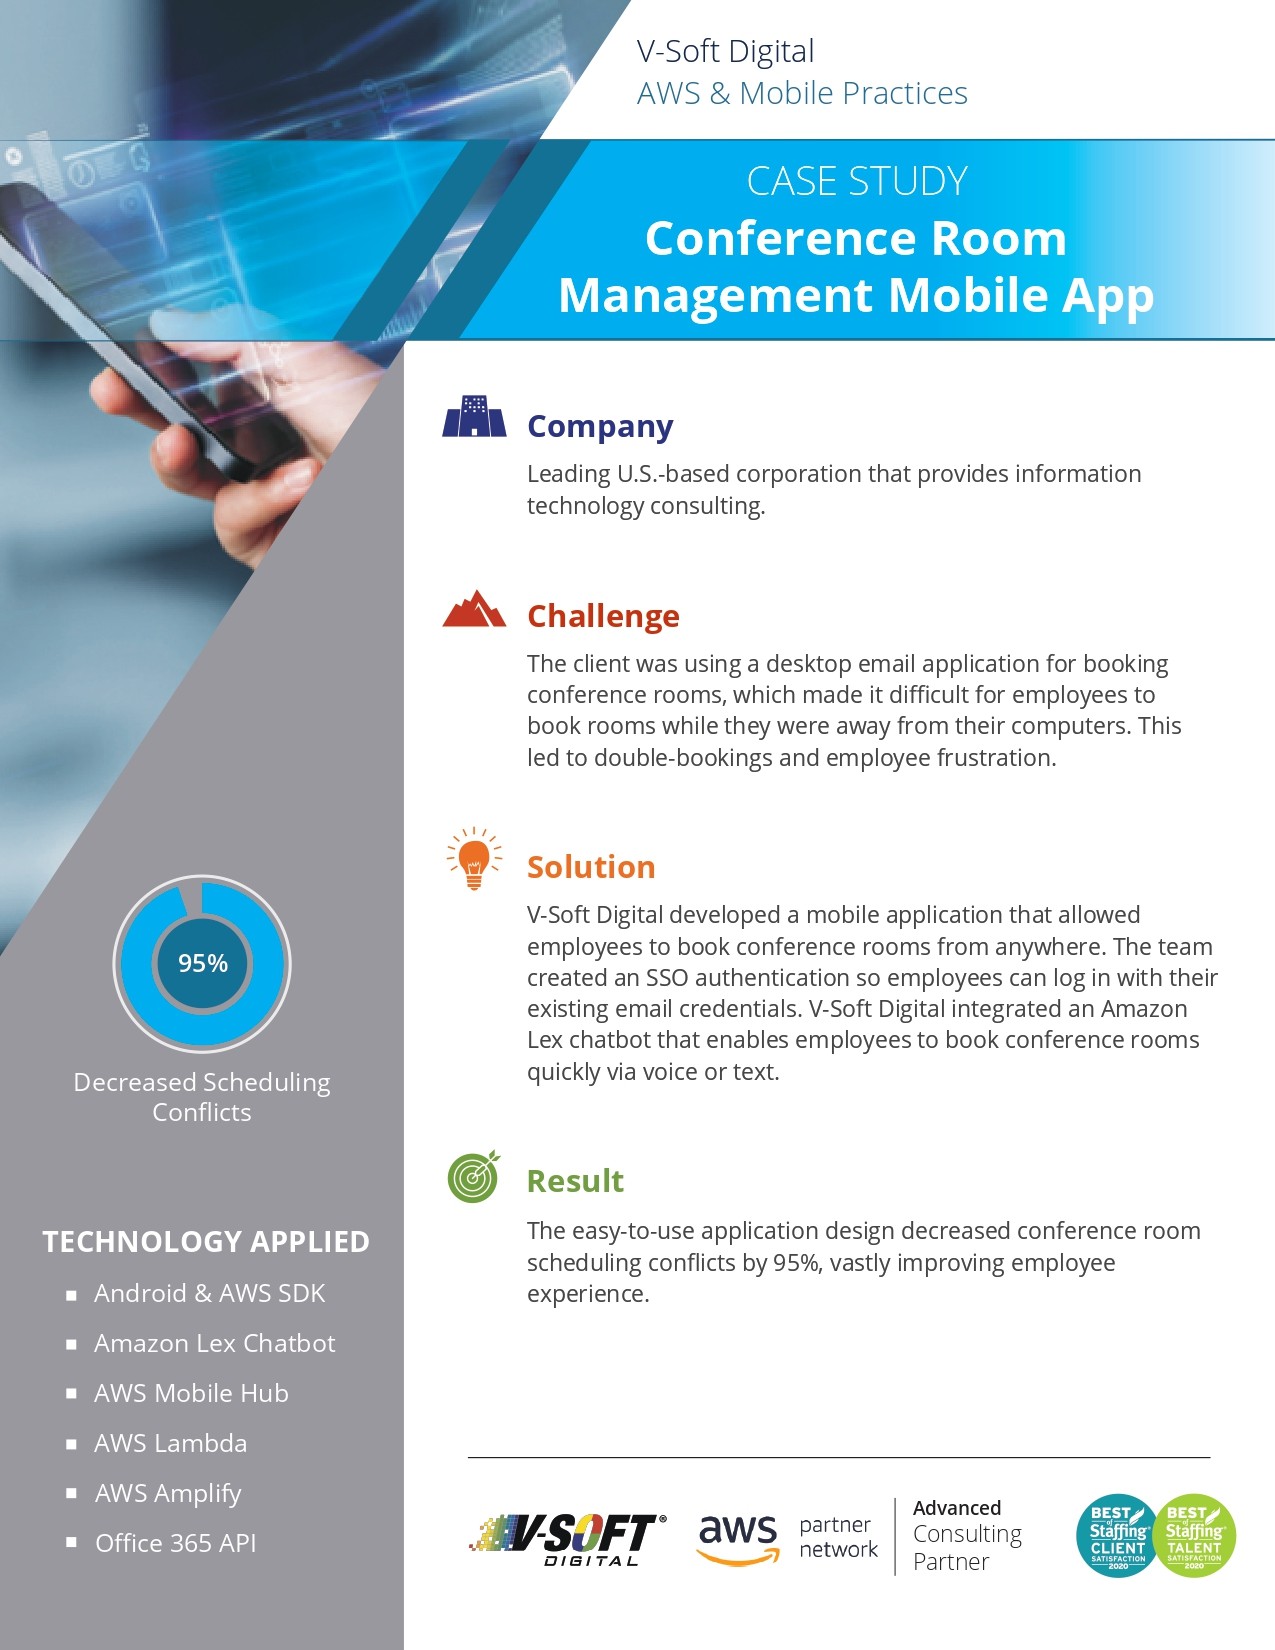 Conference Room Management Mobile App